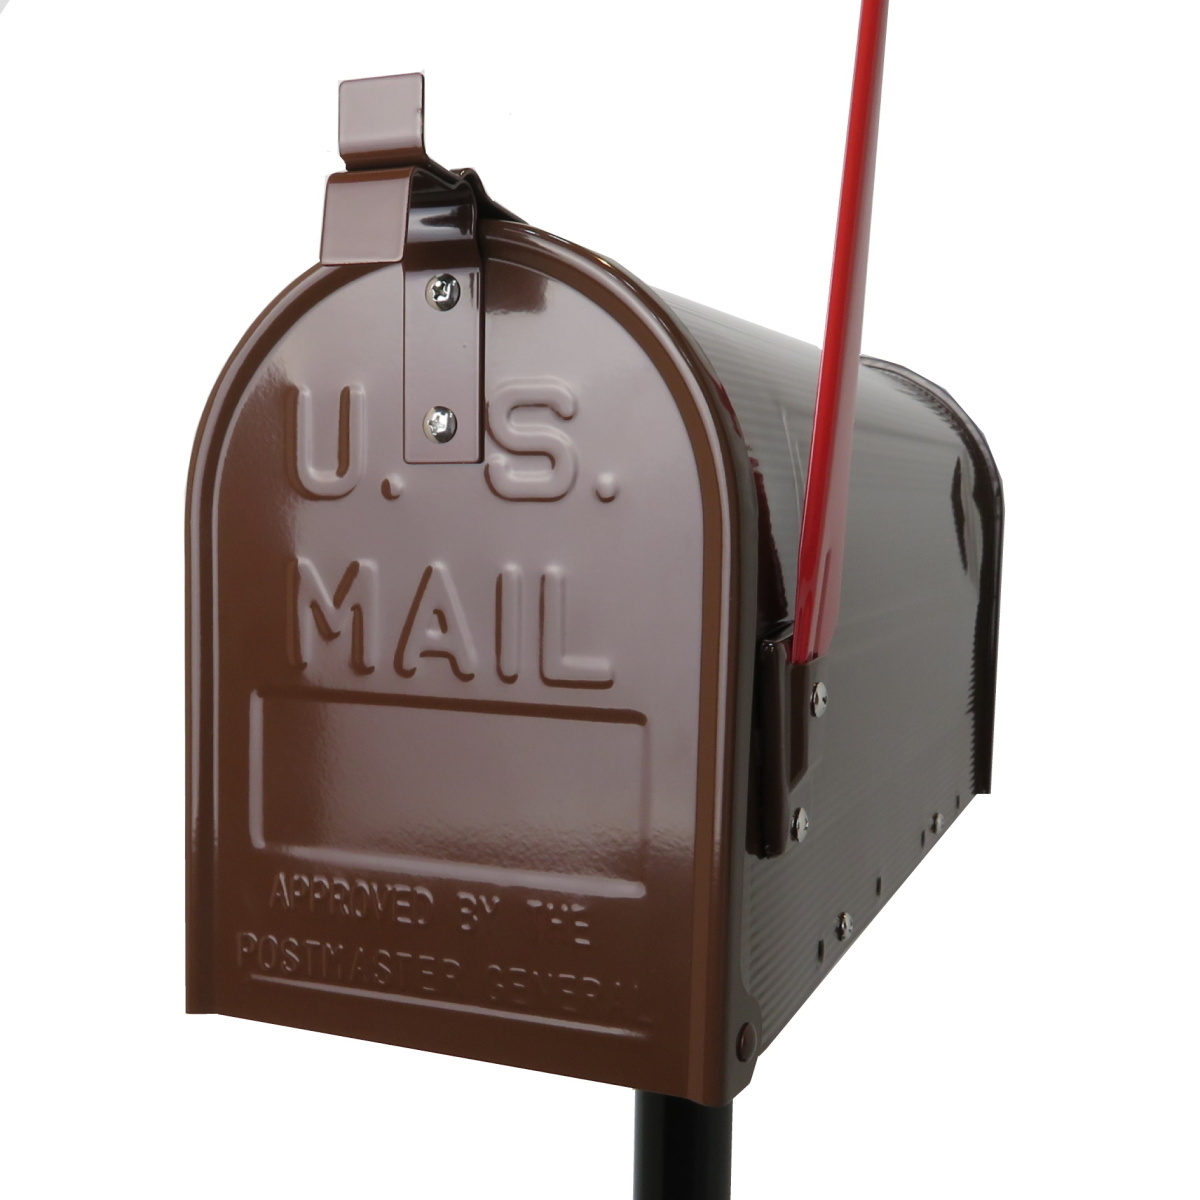 郵便ポスト郵便受けおしゃれかわいい人気アメリカンUSメールボックススタンドお洒落なブラウン茶色ポストpm086